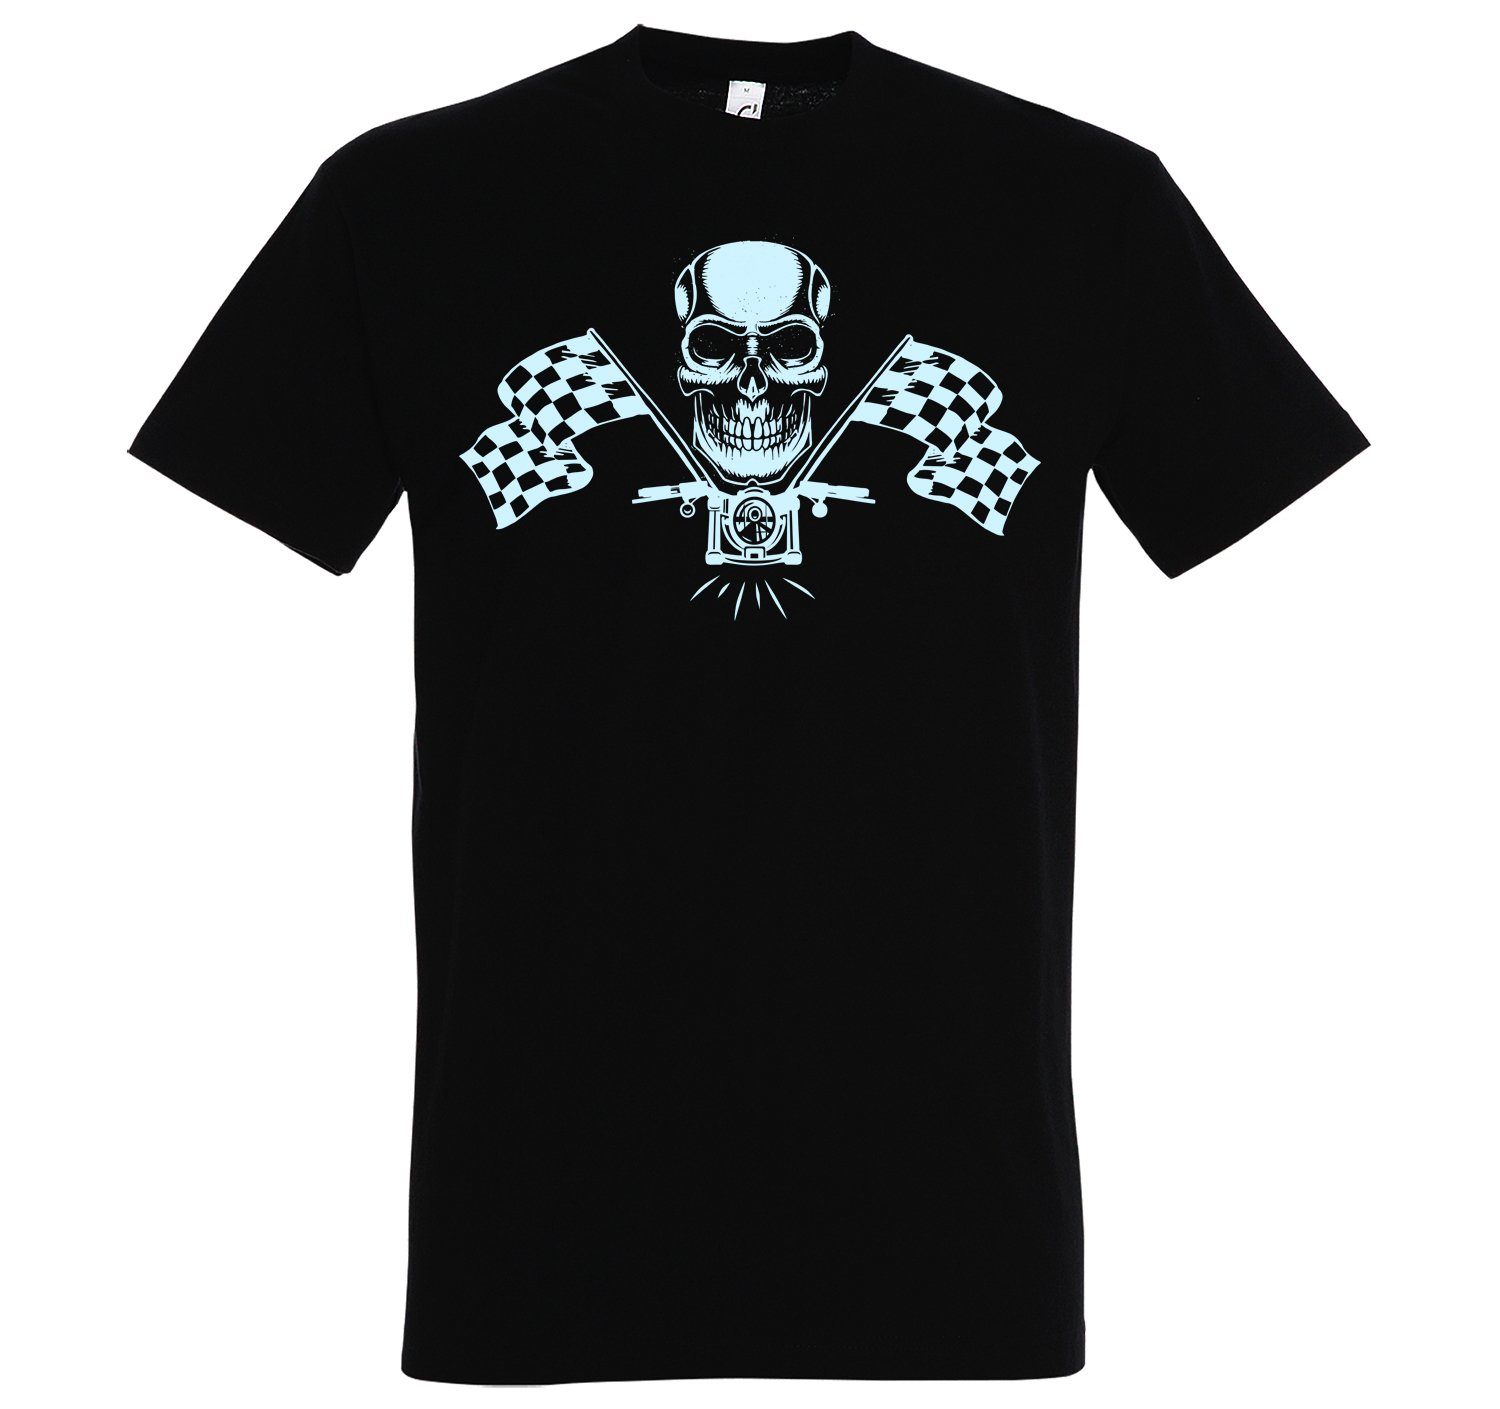 Designz Schwarz T-Shirt Youth T-Shirt Herren MotorradSkull